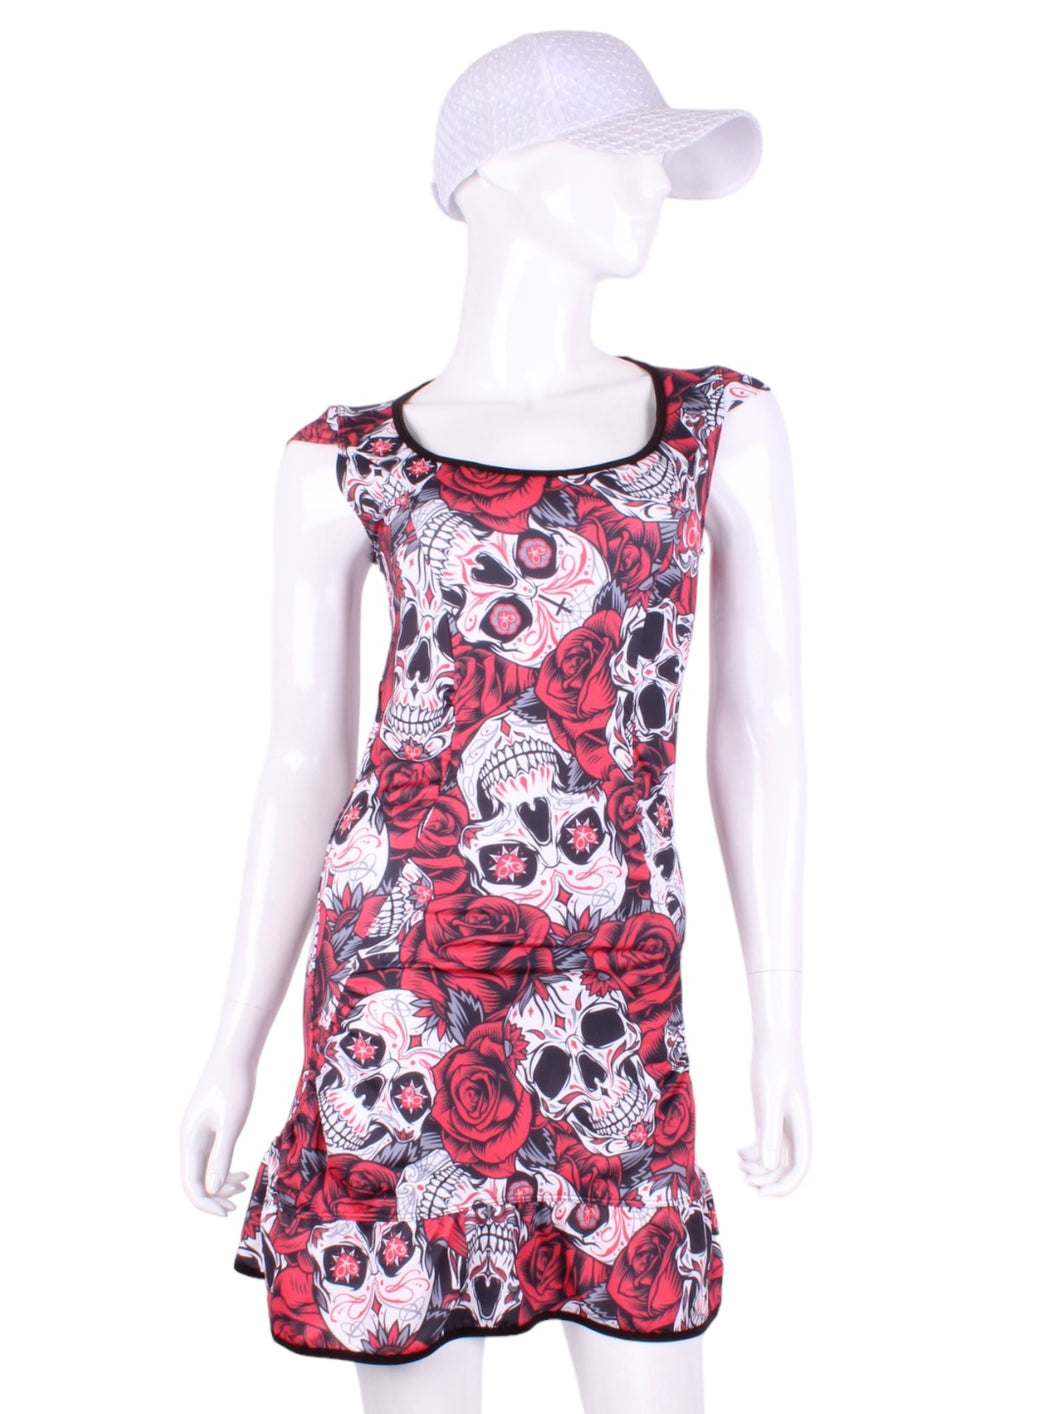 Limited Skull + Roses Monroe Tennis Dress